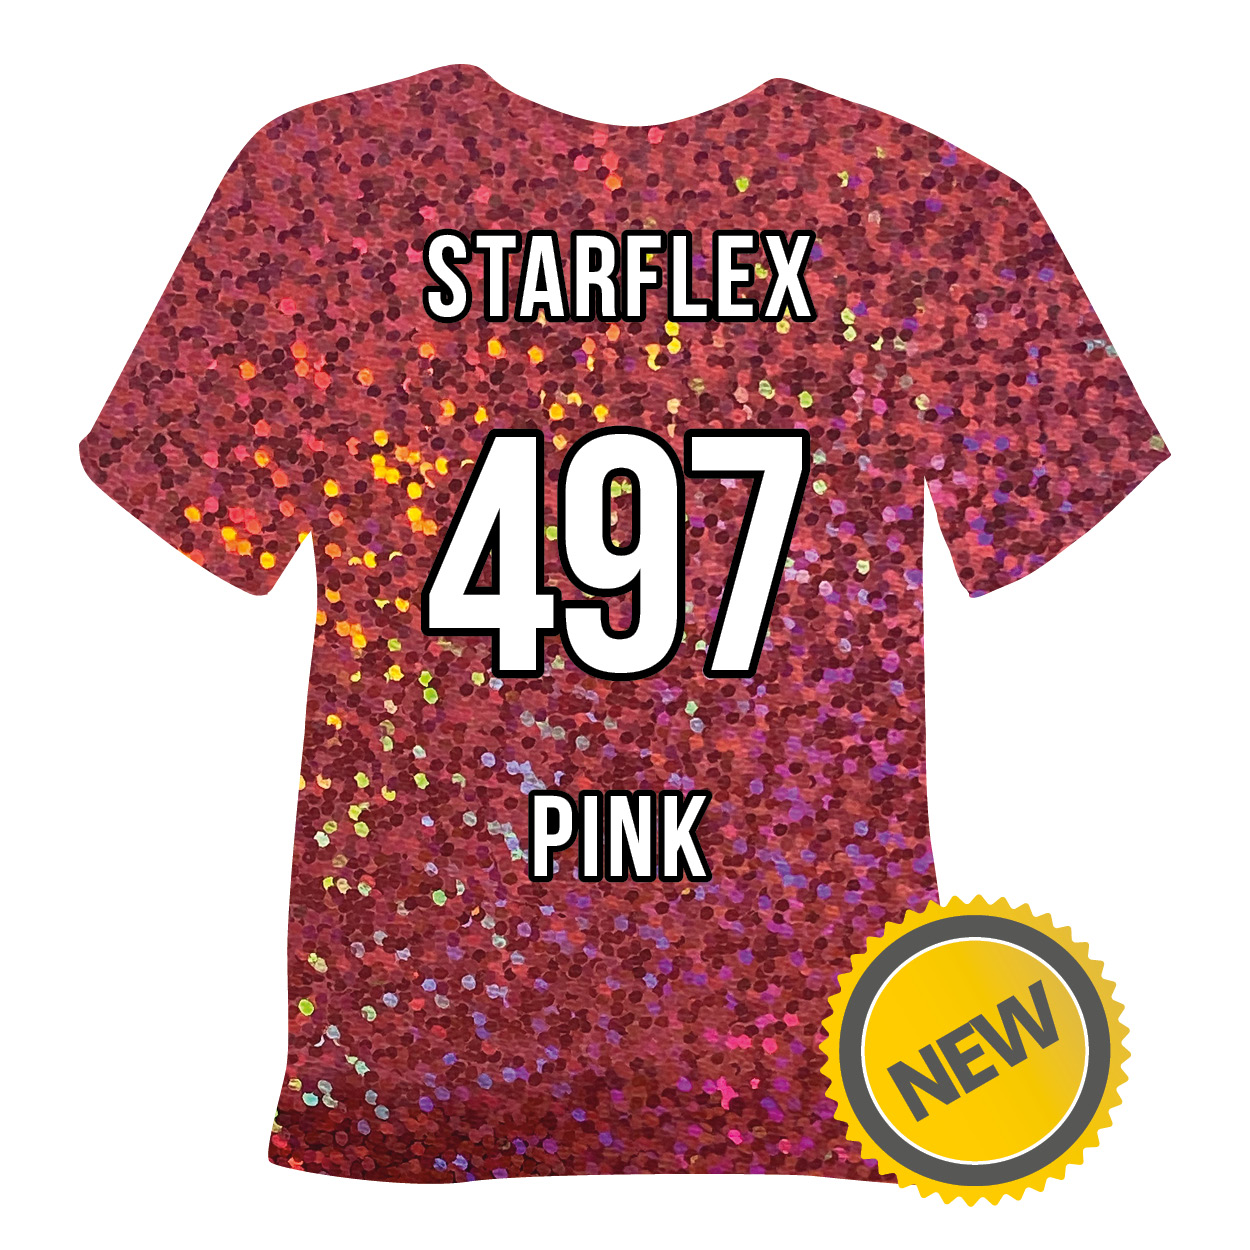 497 Starflex Pink